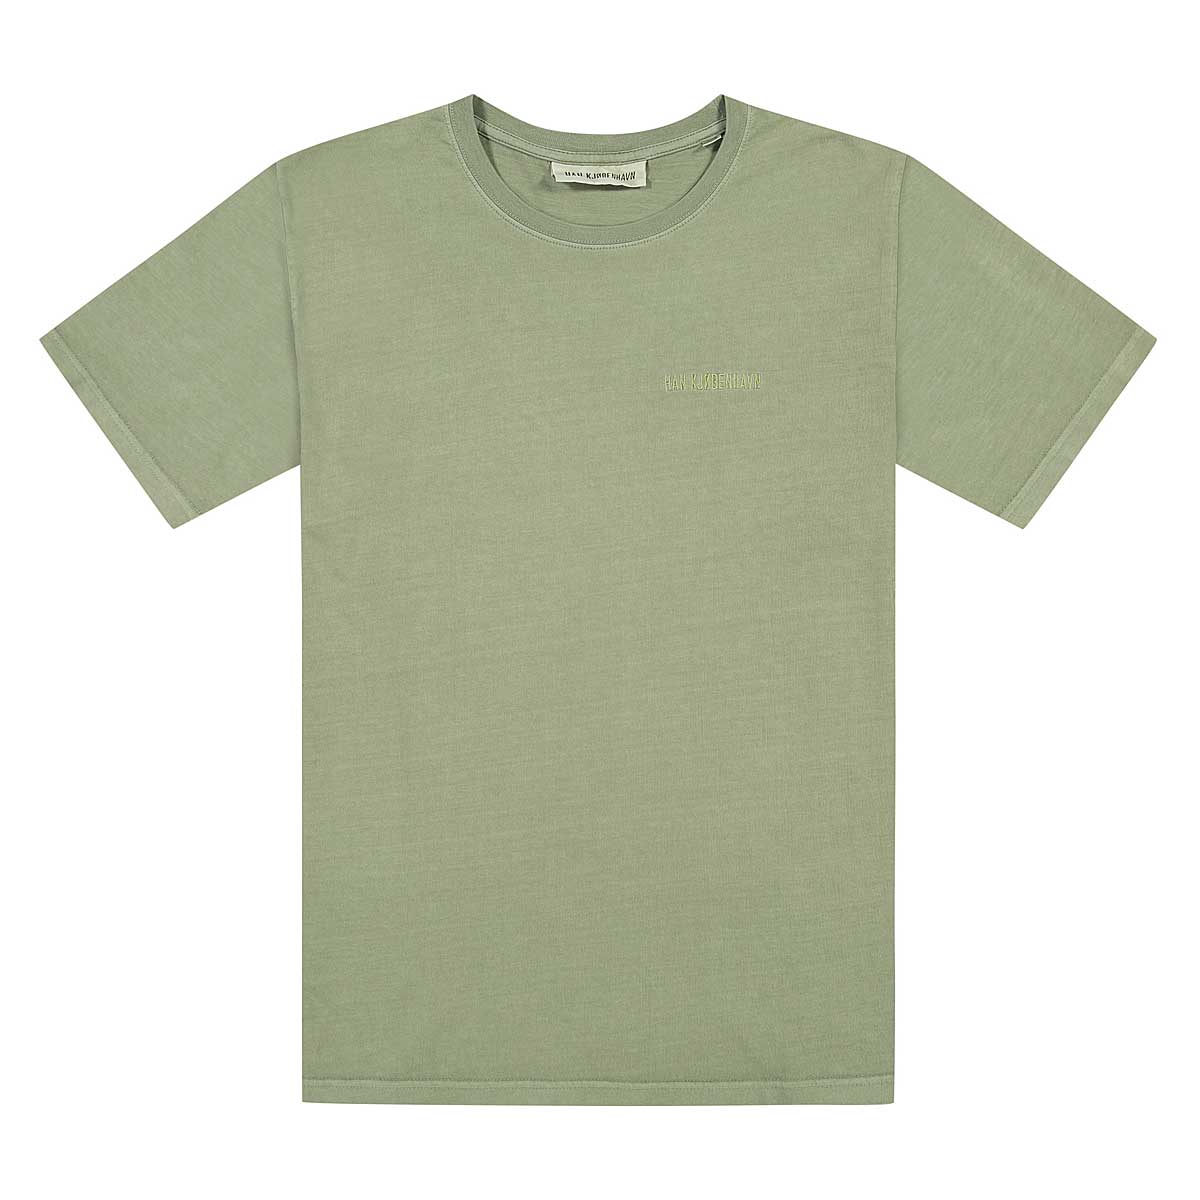 Han Kjobenhavn Casual T-Shirt, Army